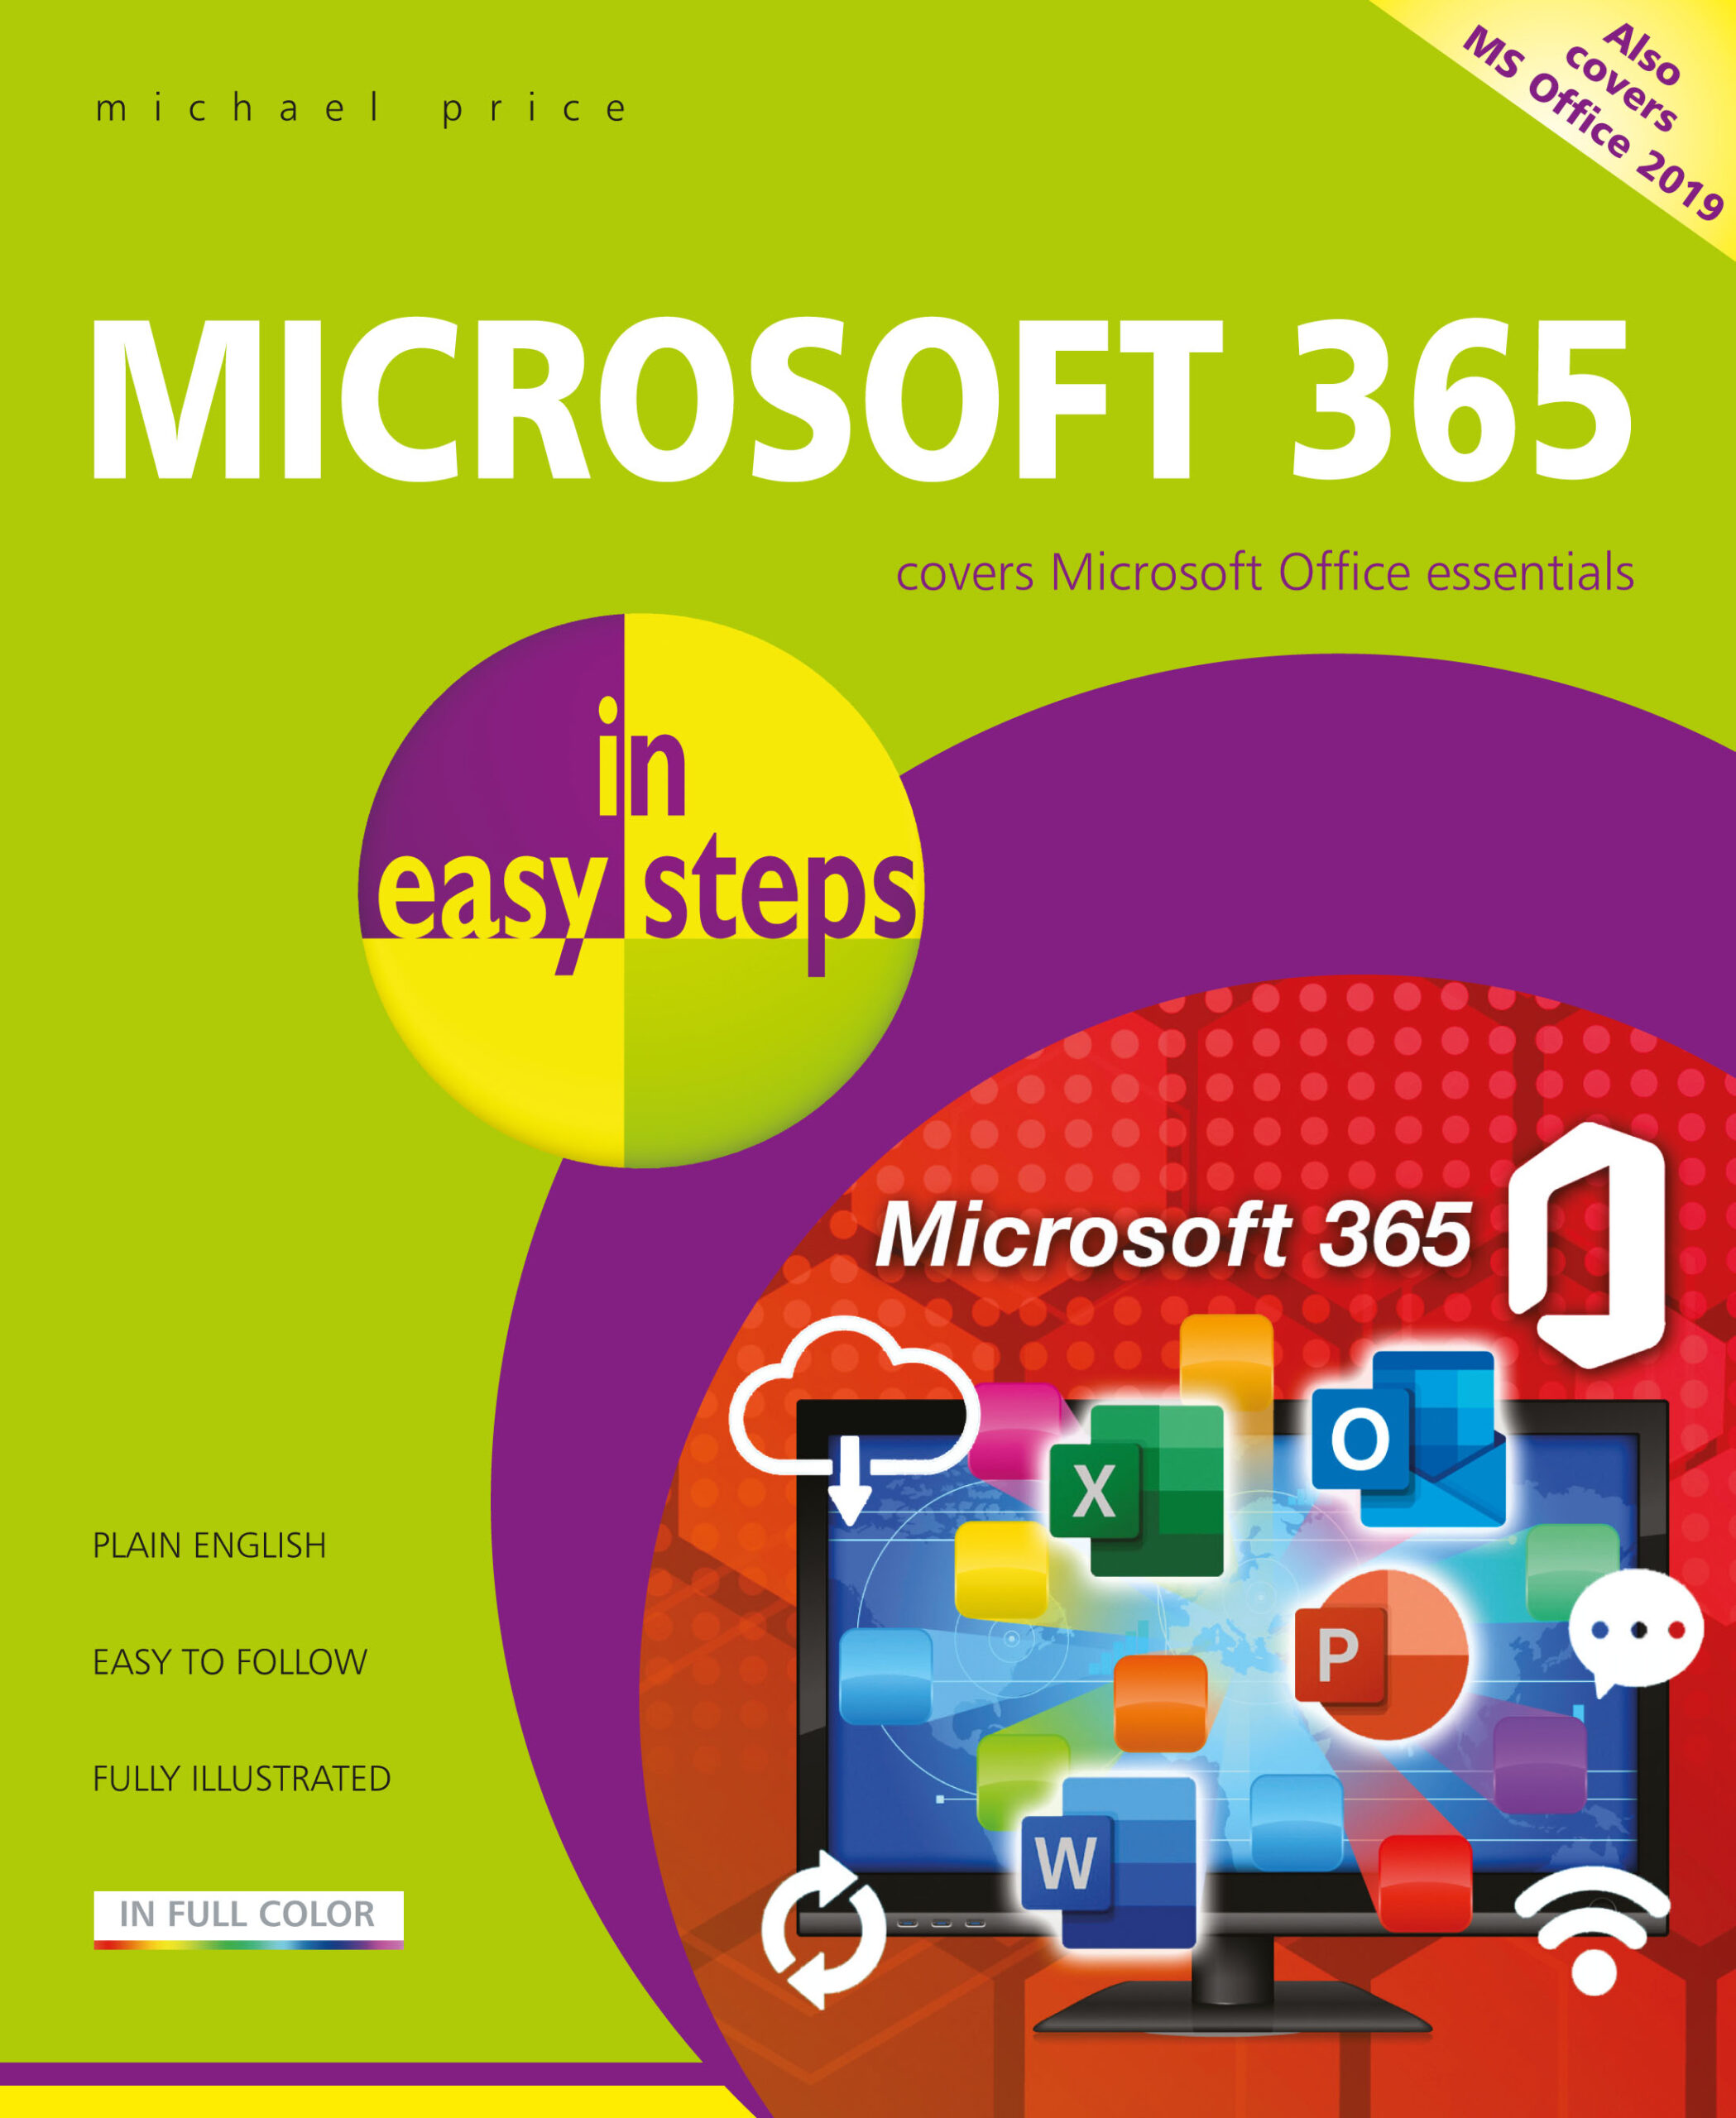 Microsoft 365 in easy steps 9781840789355||Microsoft 365 in easy steps 9781840789355|Microsoft 365 in easy steps 9781840789355||Microsoft 365 in easy steps 9781840789355